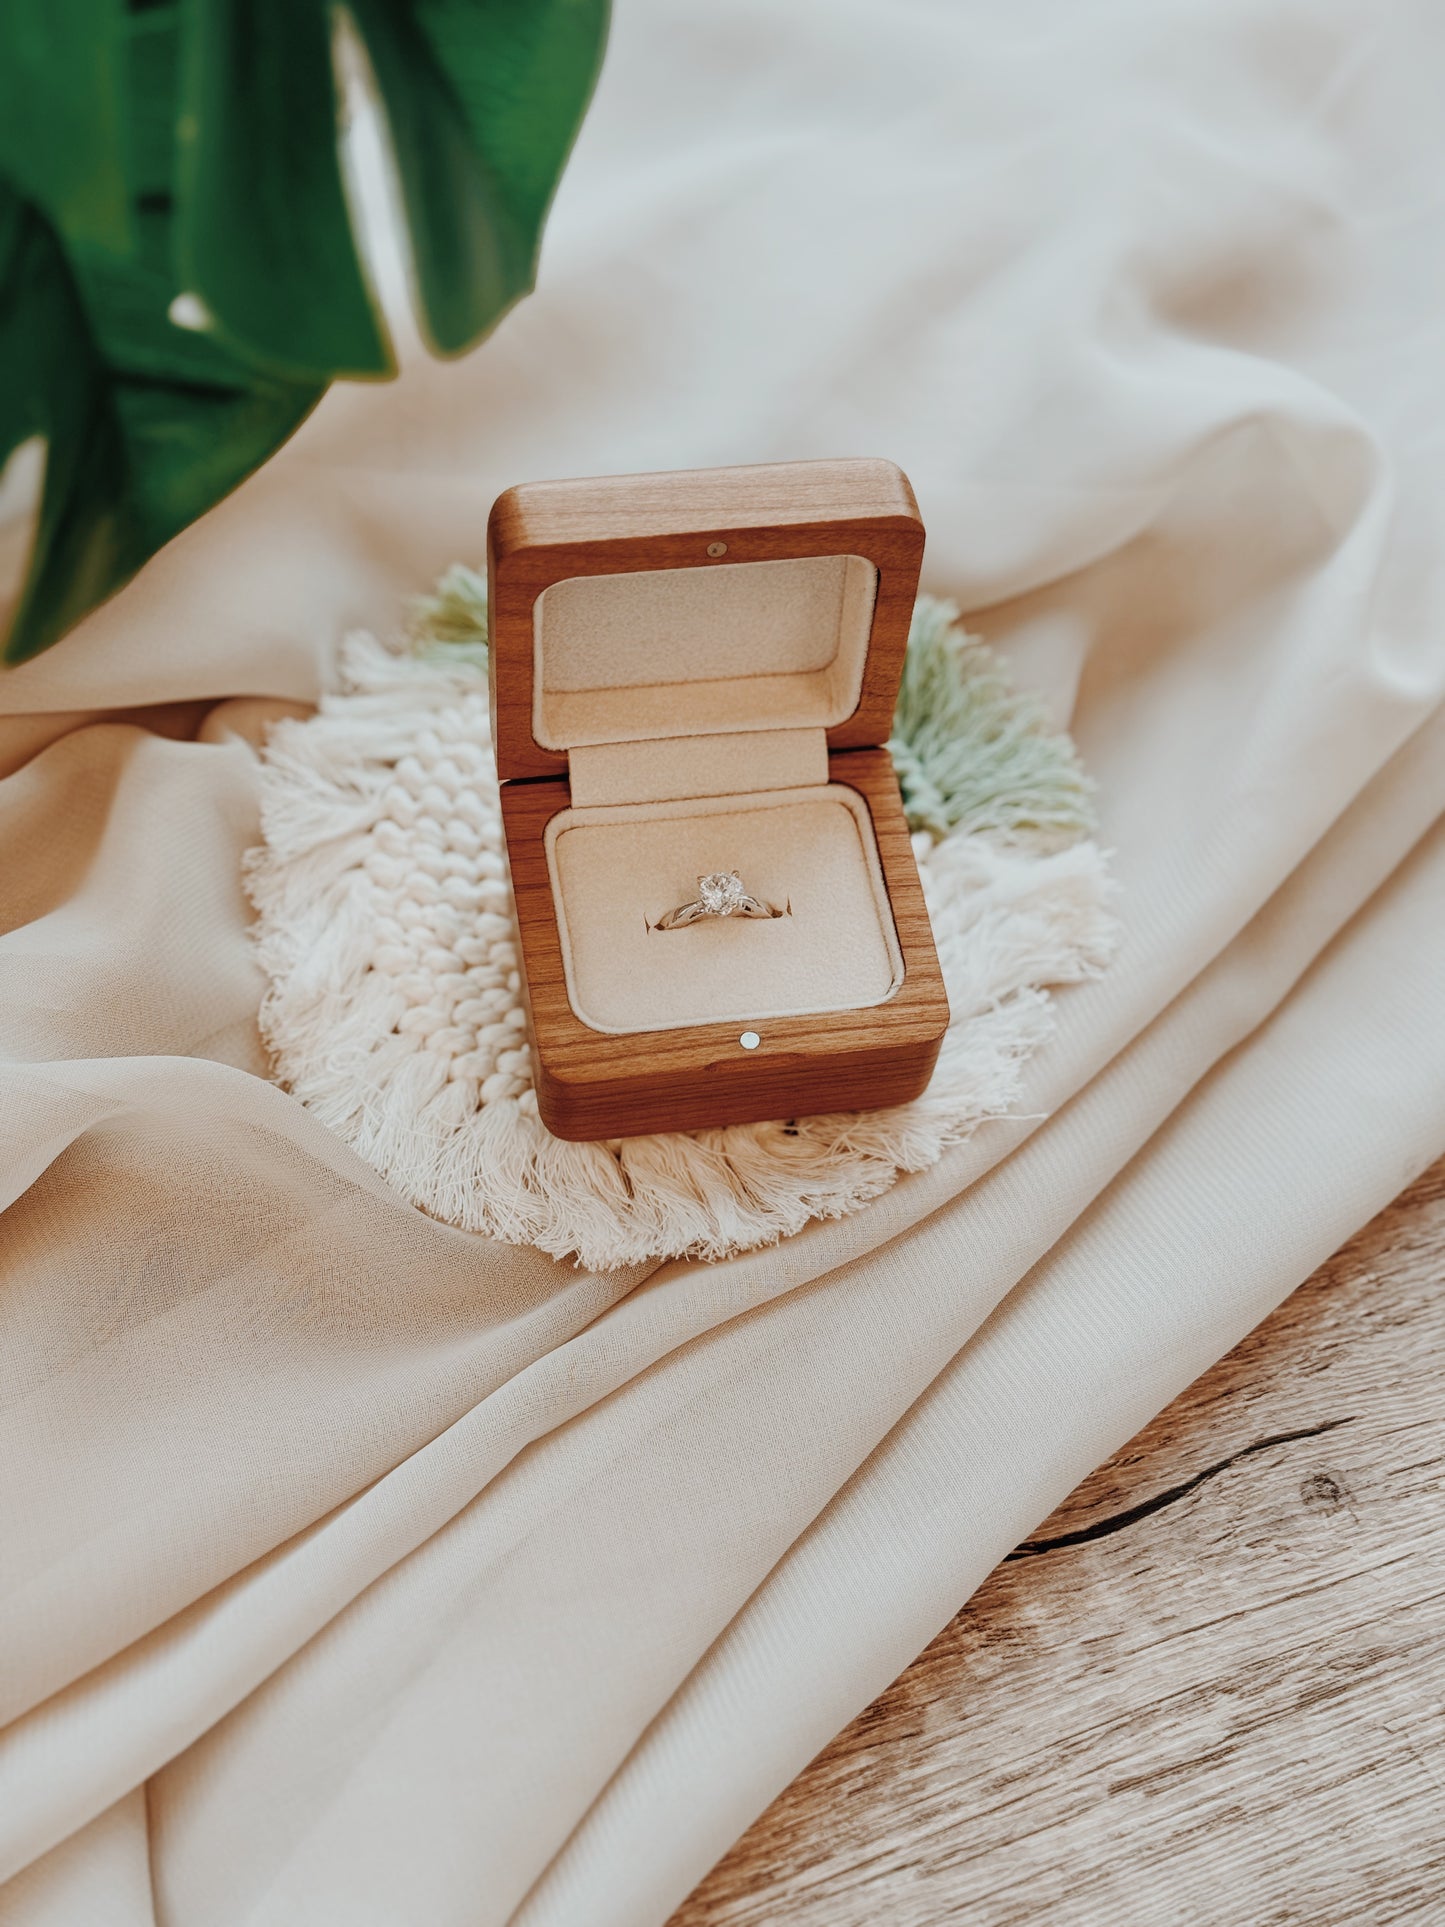 Proposal Ring Box